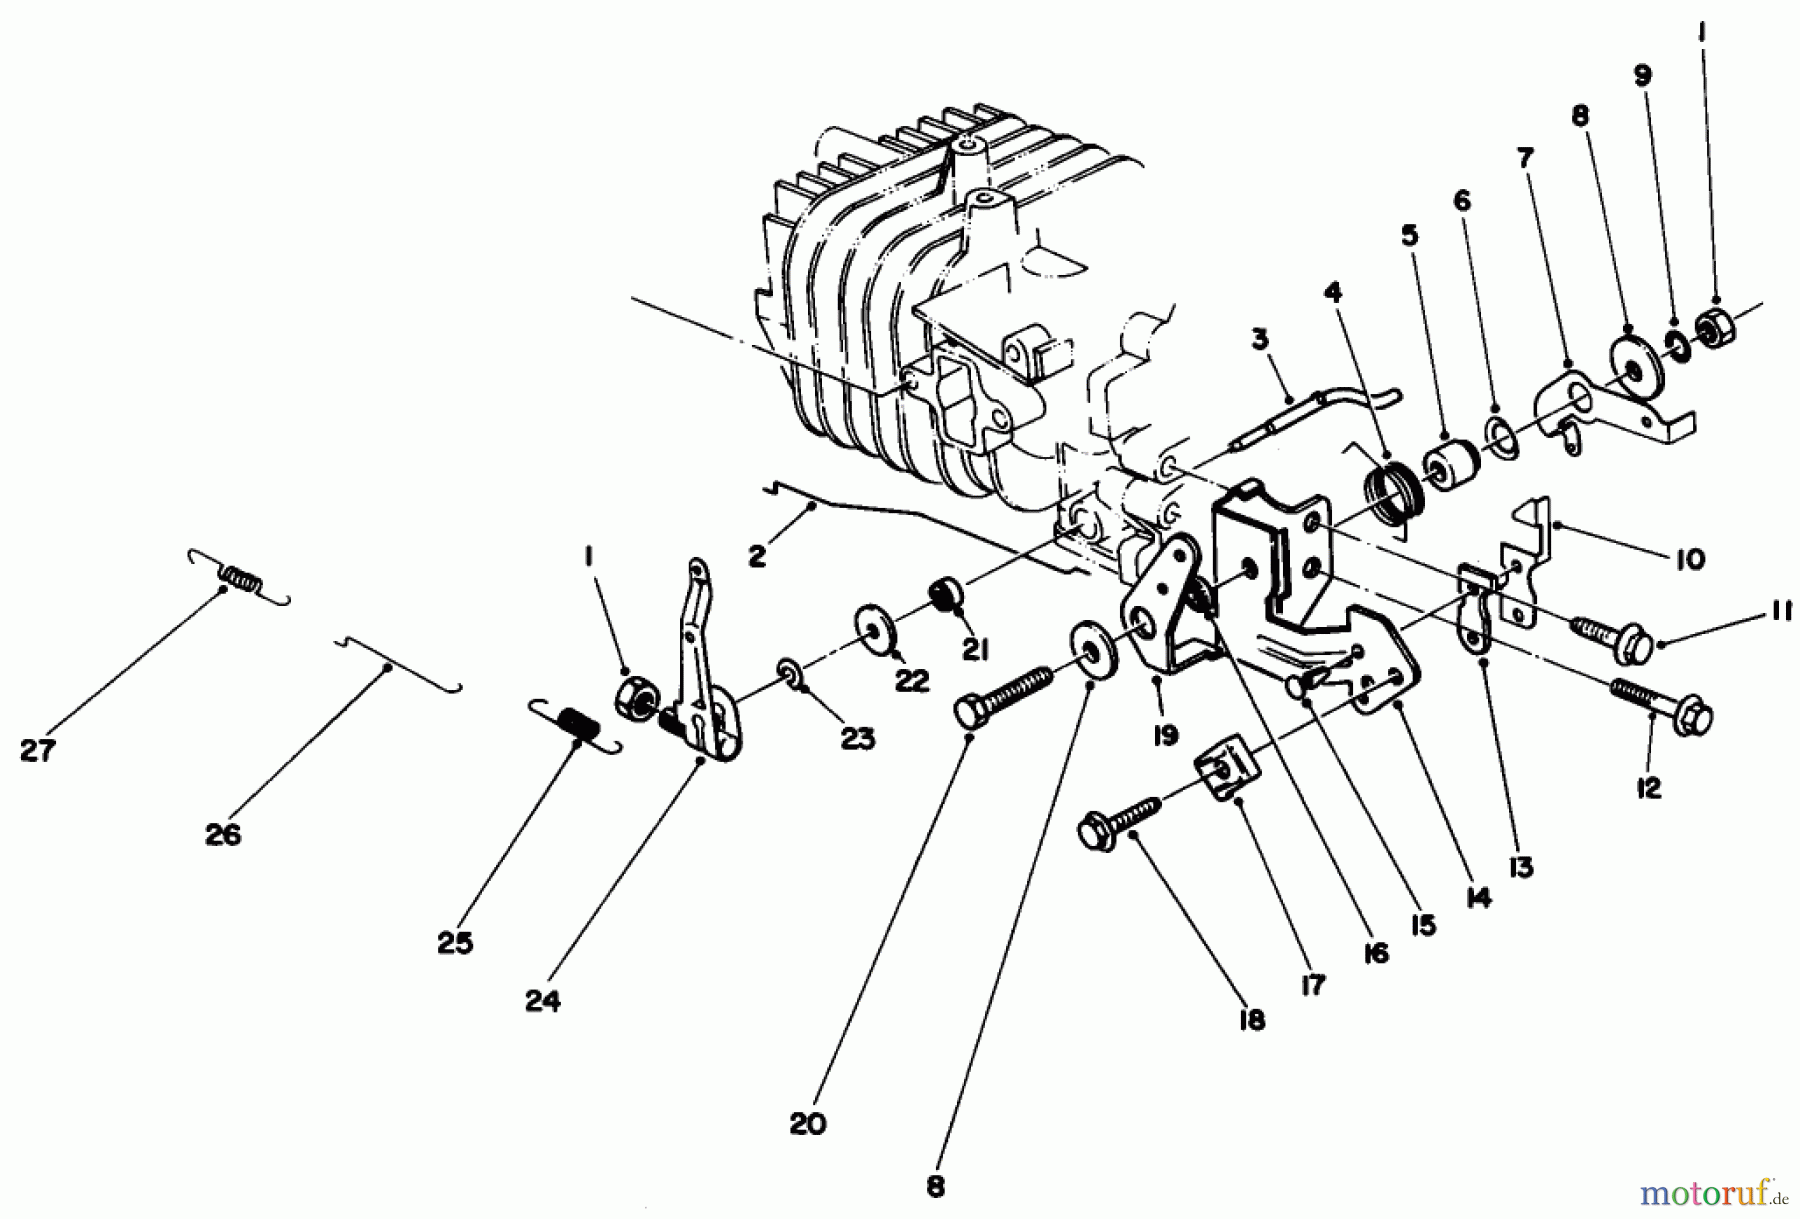  Toro Neu Mowers, Walk-Behind Seite 2 22025 - Toro Lawnmower, 1987 (7000001-7999999) ENGINE ASSEMBLY MODEL NO. 47PG6 #4